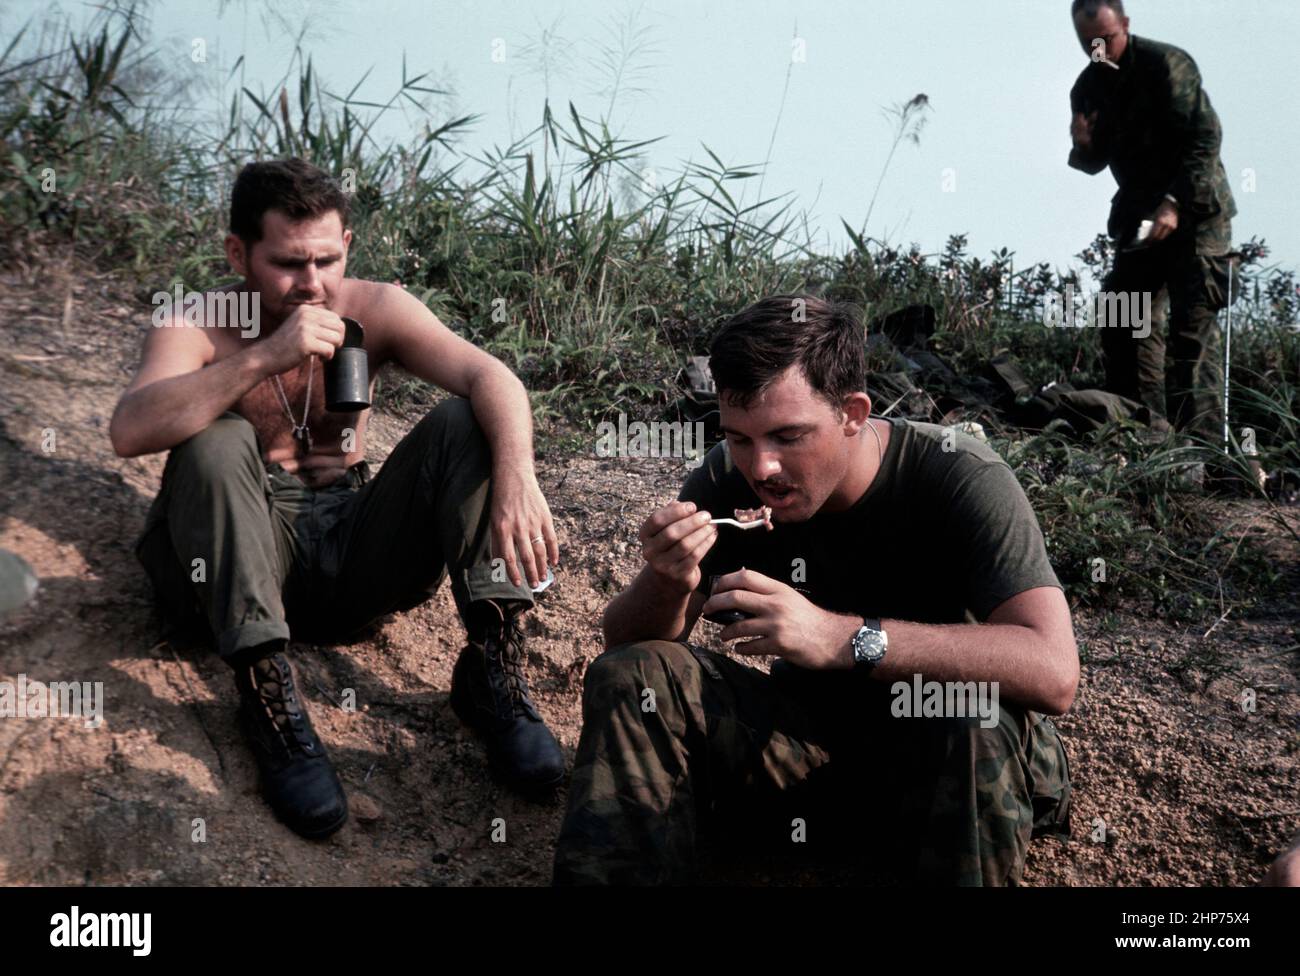 Vietnam war Era Fotos: 'HMS, Operation Oklahoma Hills', April 1969 - Krankenhauskorpsmänner essen Rationen - PD Foto mit freundlicher Genehmigung des USMC Stockfoto